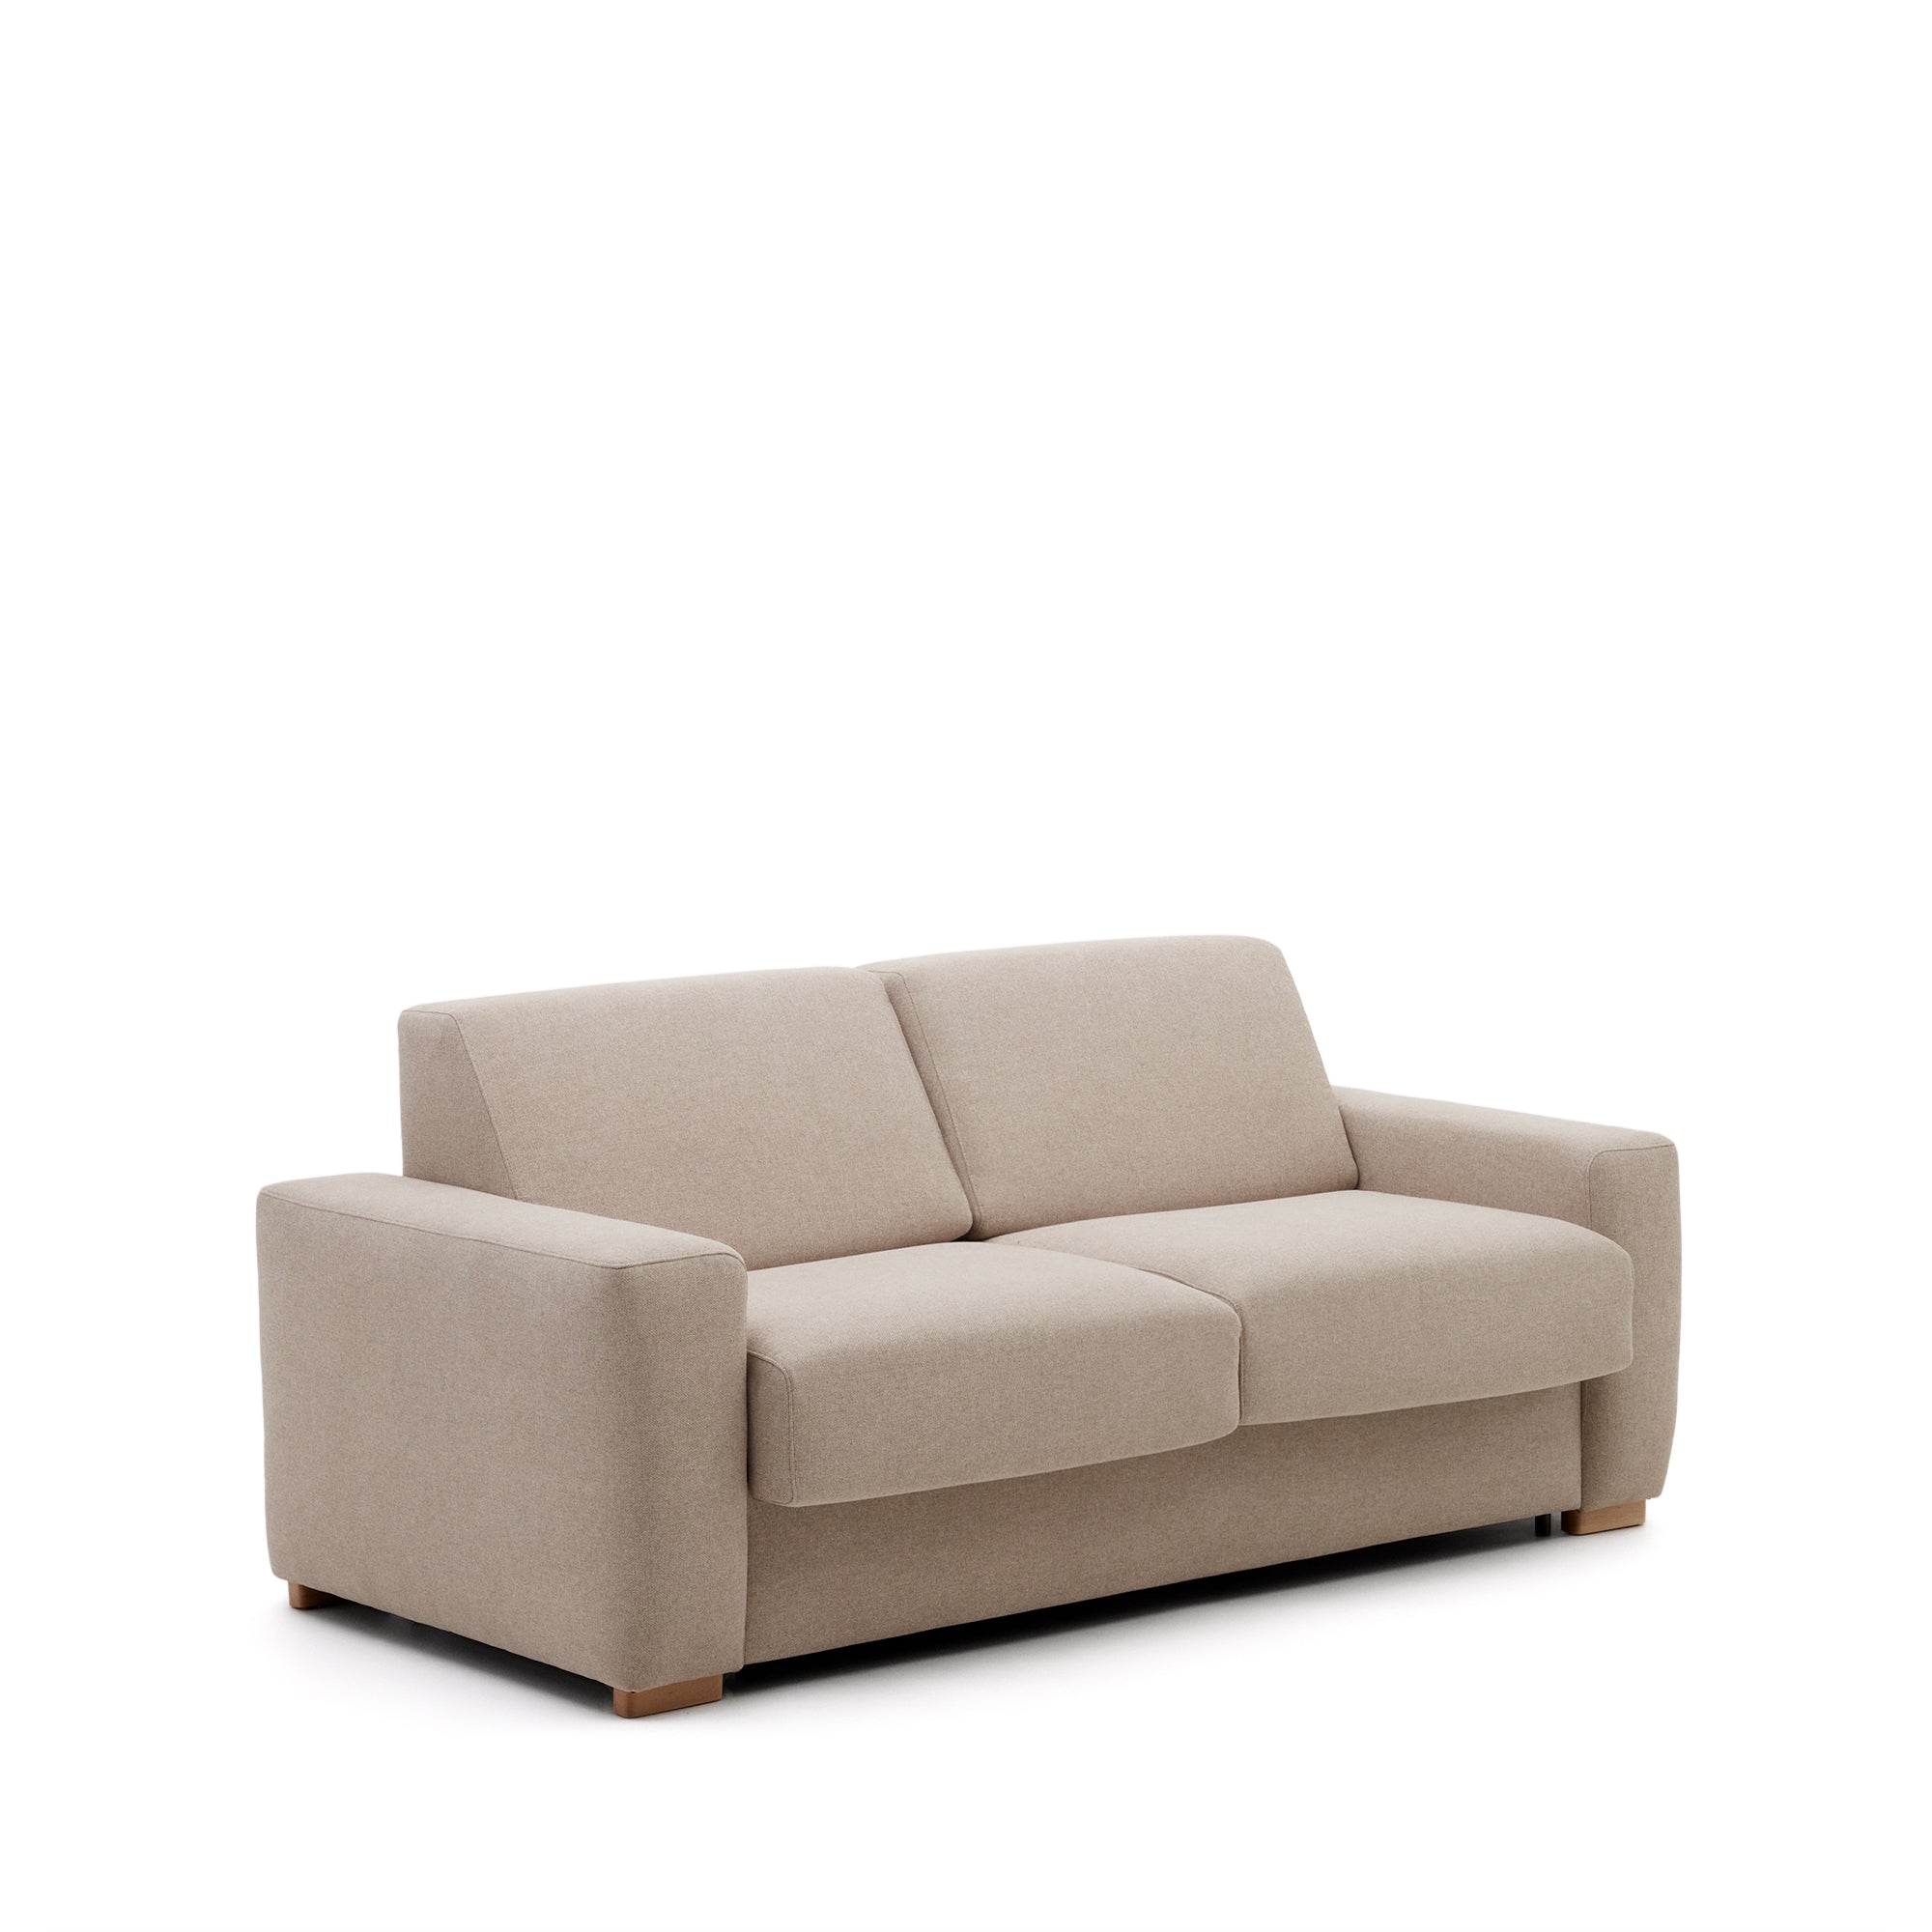 Anley 3 személyes kanapéágy bézs színben 204 cm